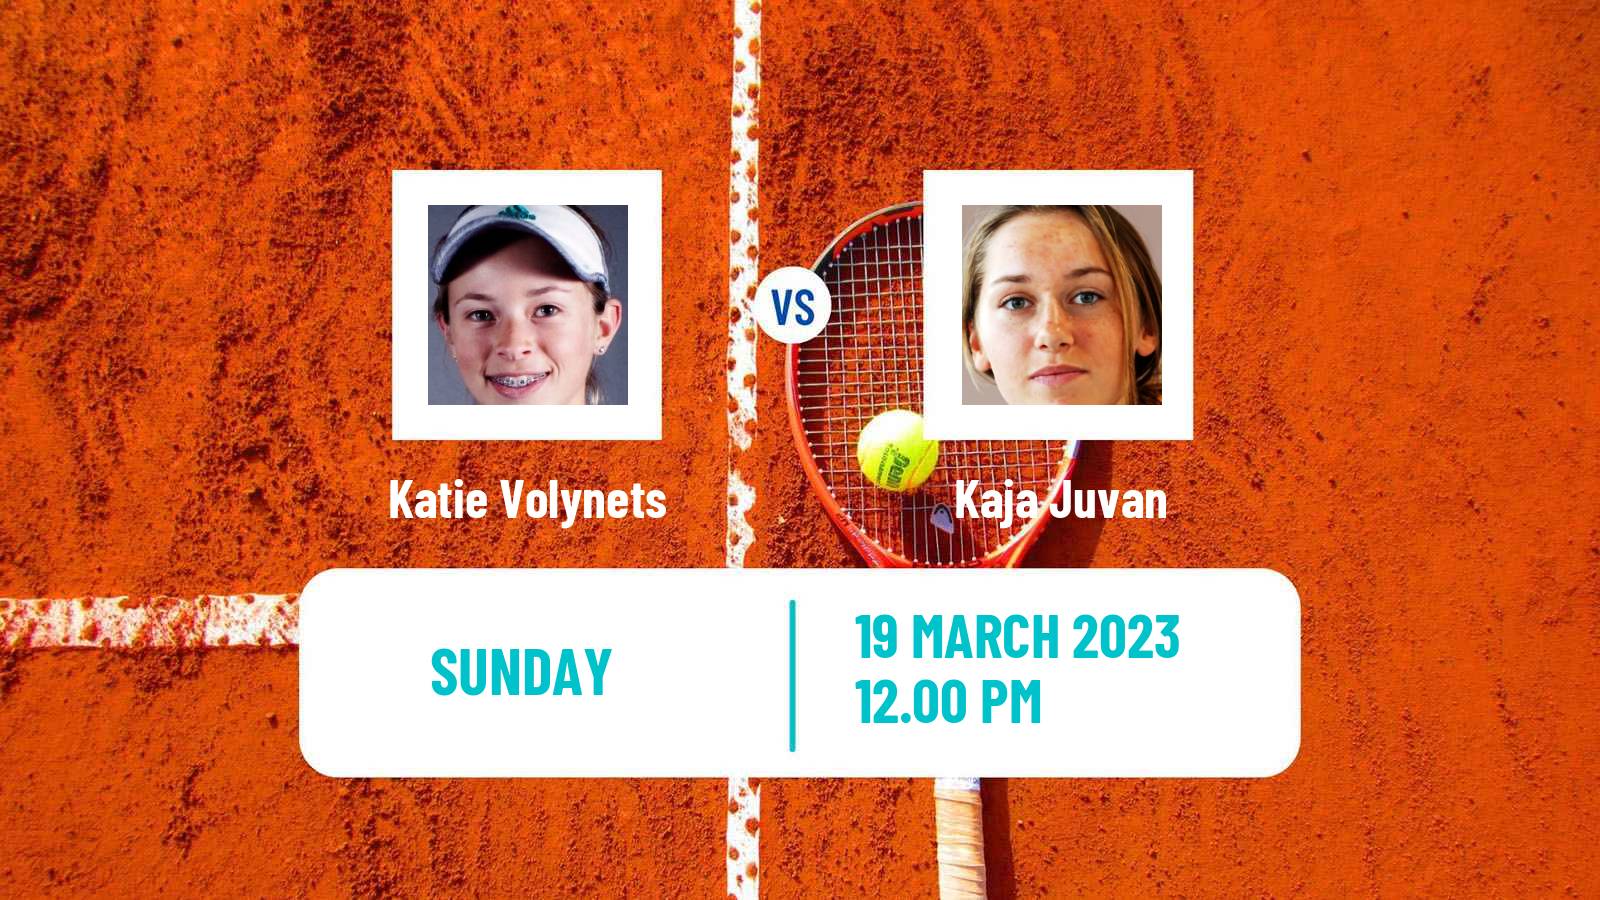 Tennis WTA Miami Katie Volynets - Kaja Juvan